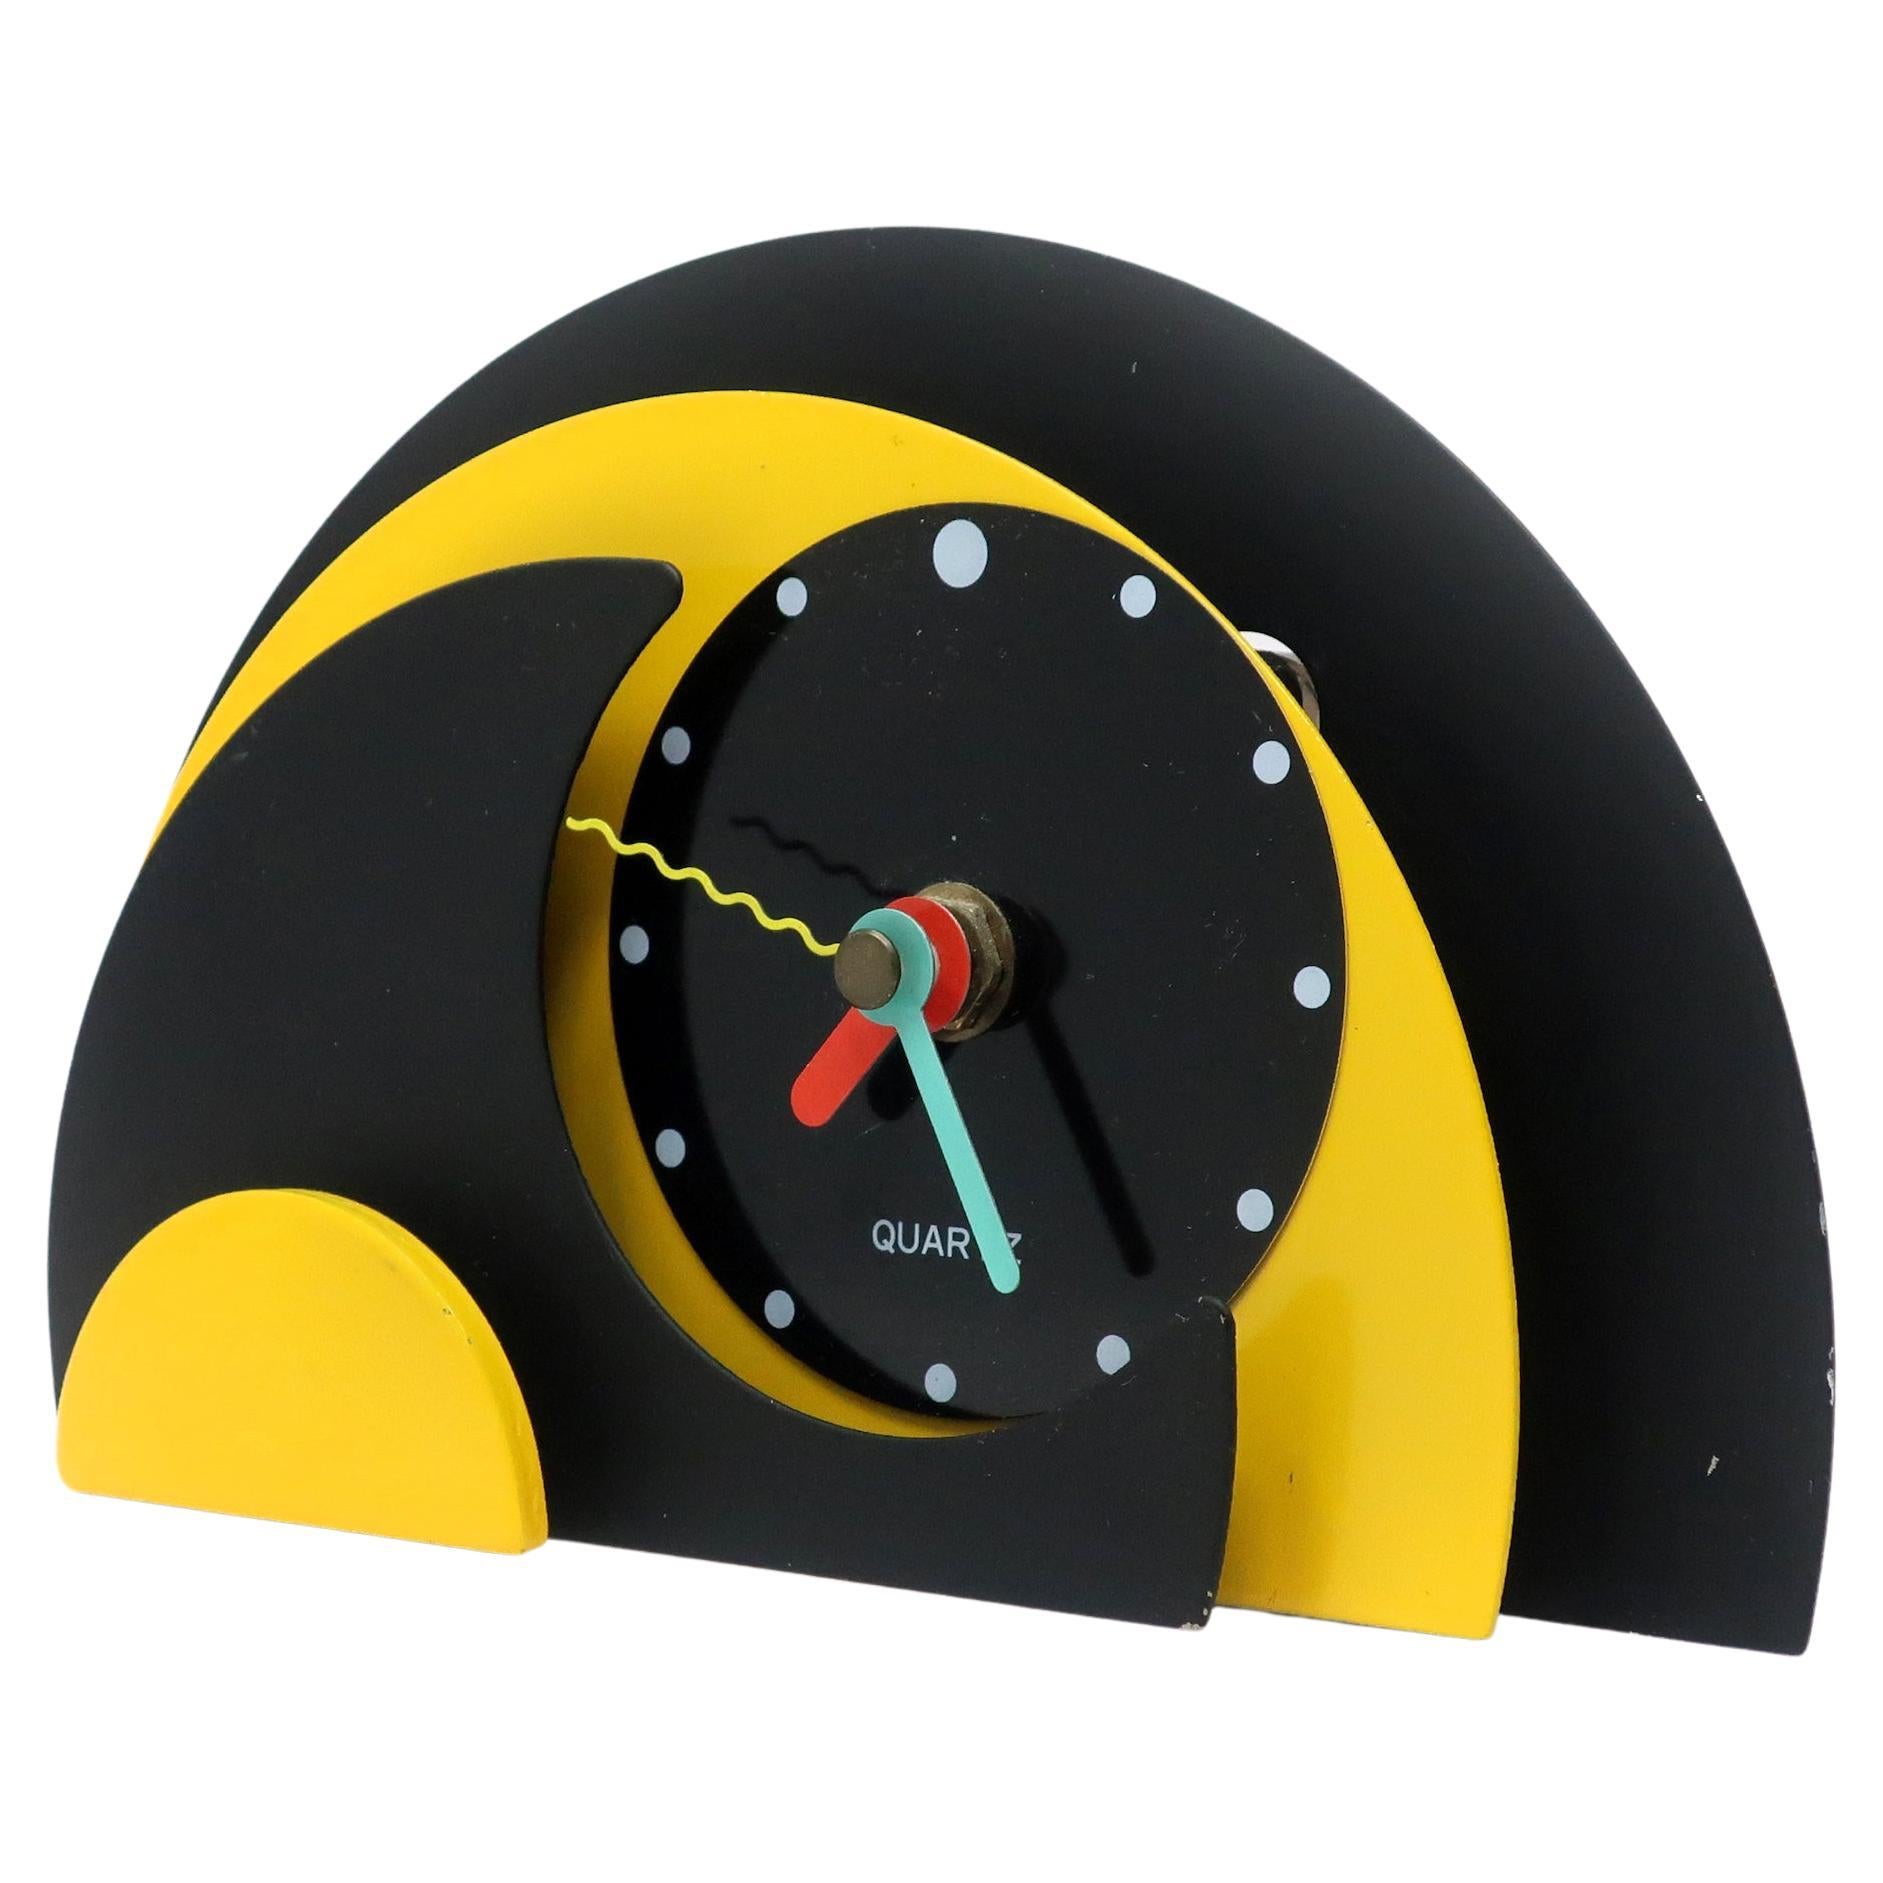 Horloge de bureau ou de cheminée jaune et noire des années 1980